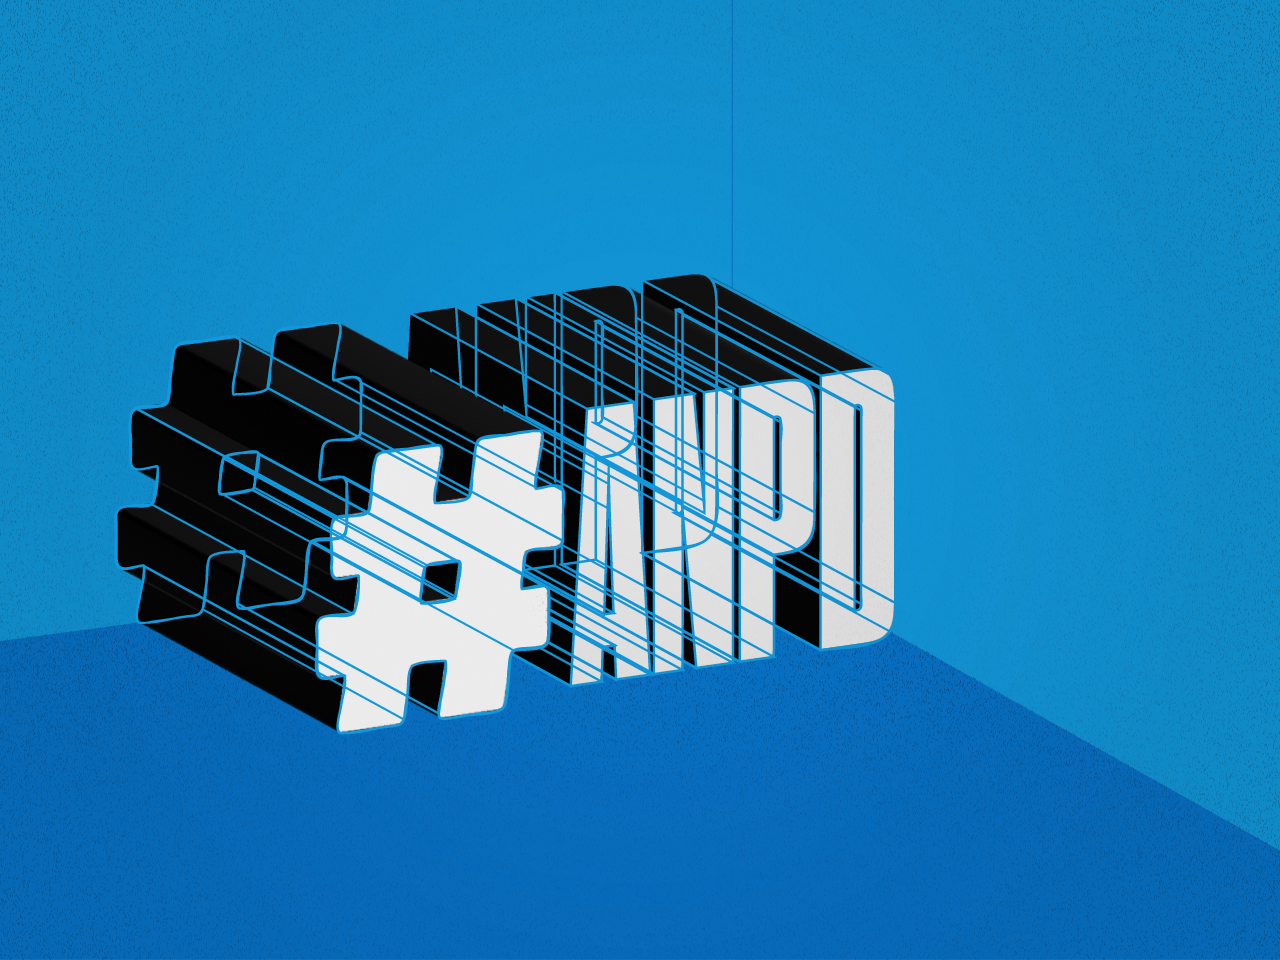 Essa arte de uma hashtag com as letras ANPD (Agência Nacional de Proteção de Dados), sobre um fundo azul